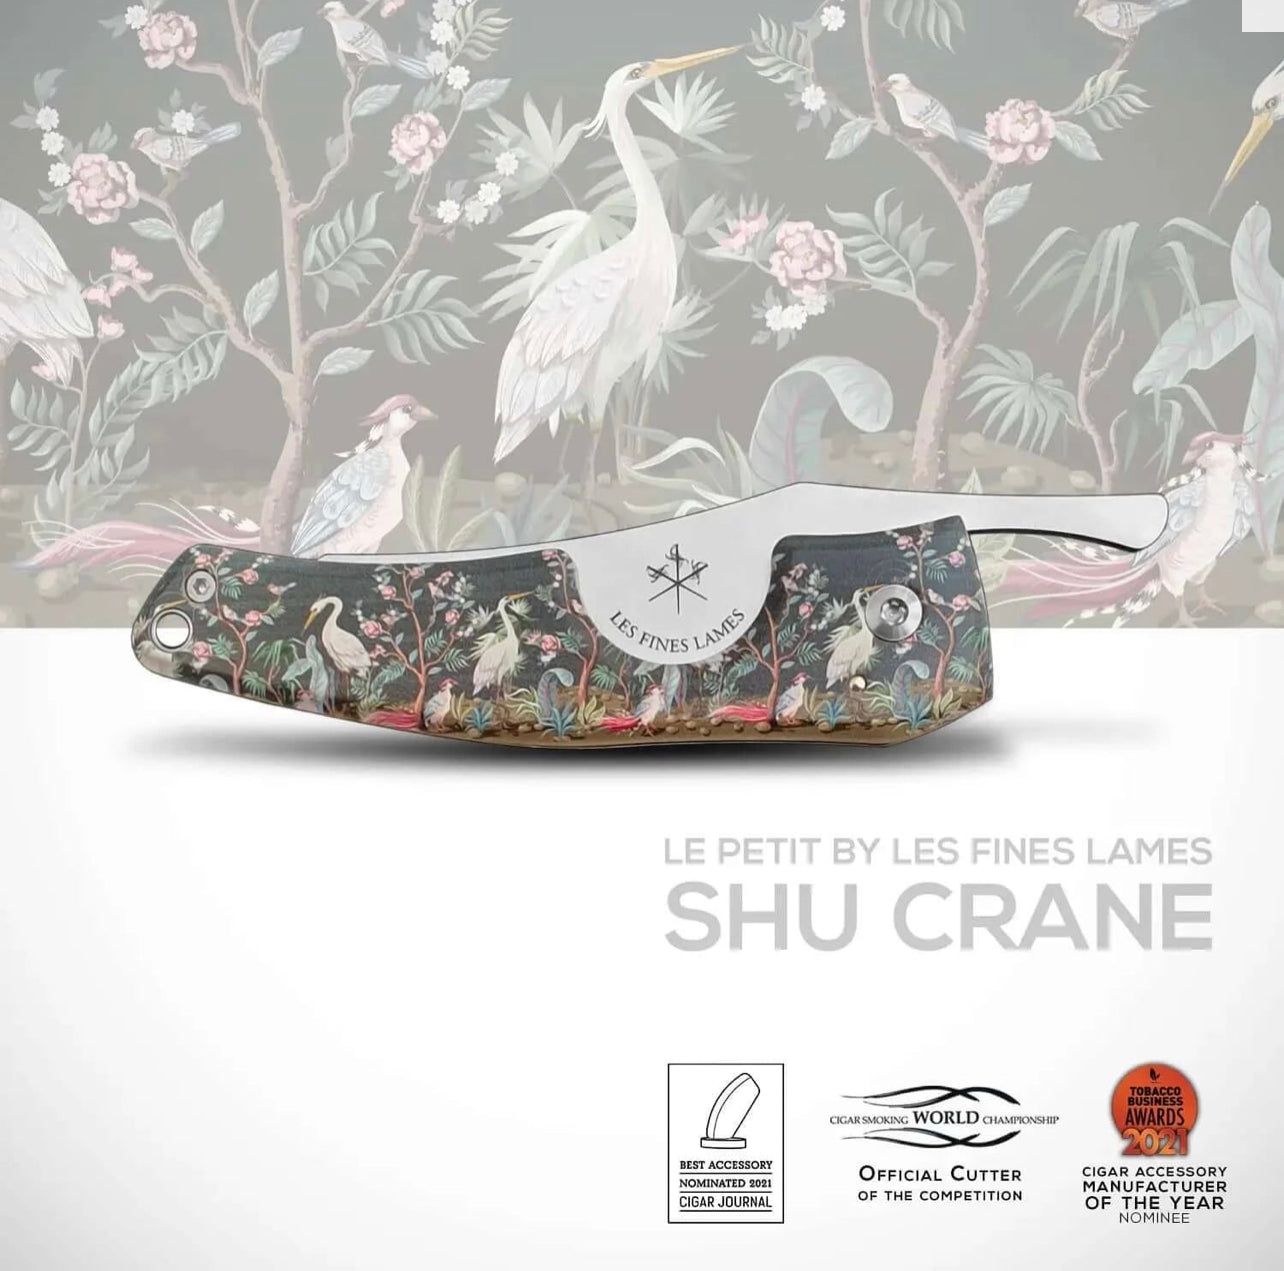 LFL • LE PETIT • Shu Crane